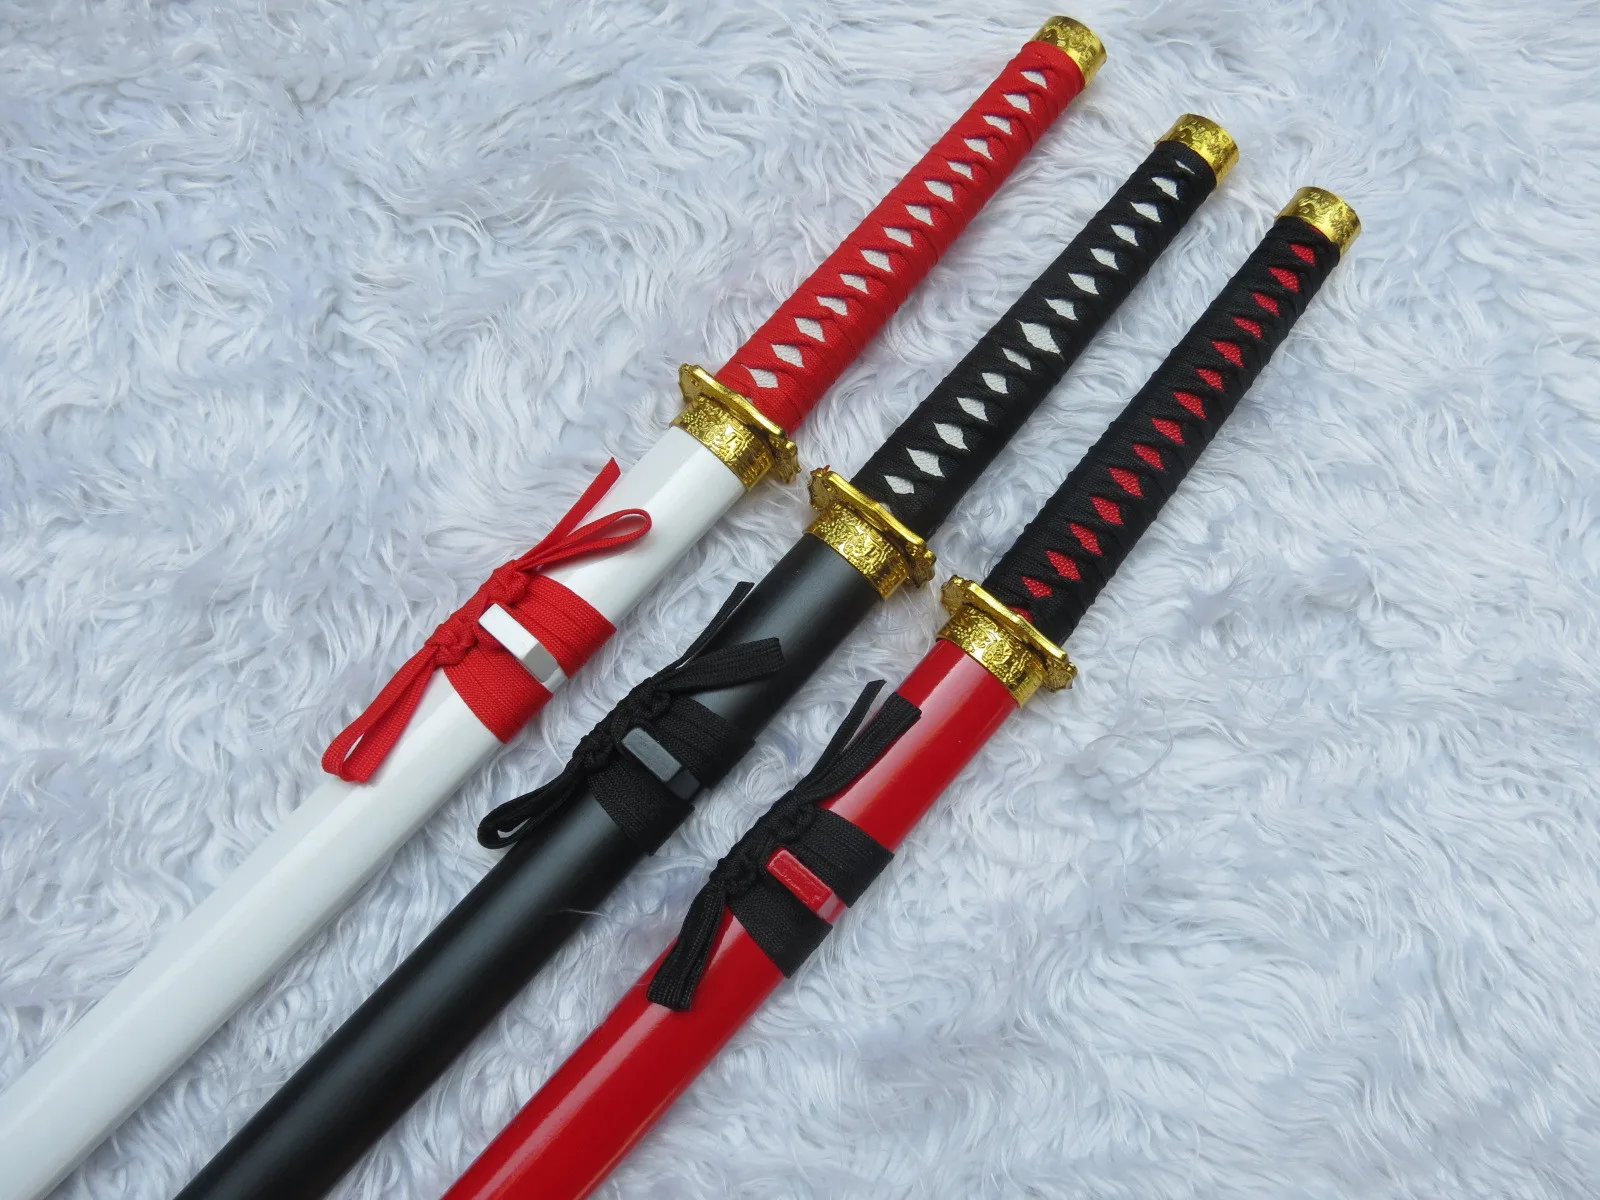 Деревянный меч персонаж-игра имитация анимация дерево черный, красный и белый трехцветный дерево самурайский меч триколор на выбор